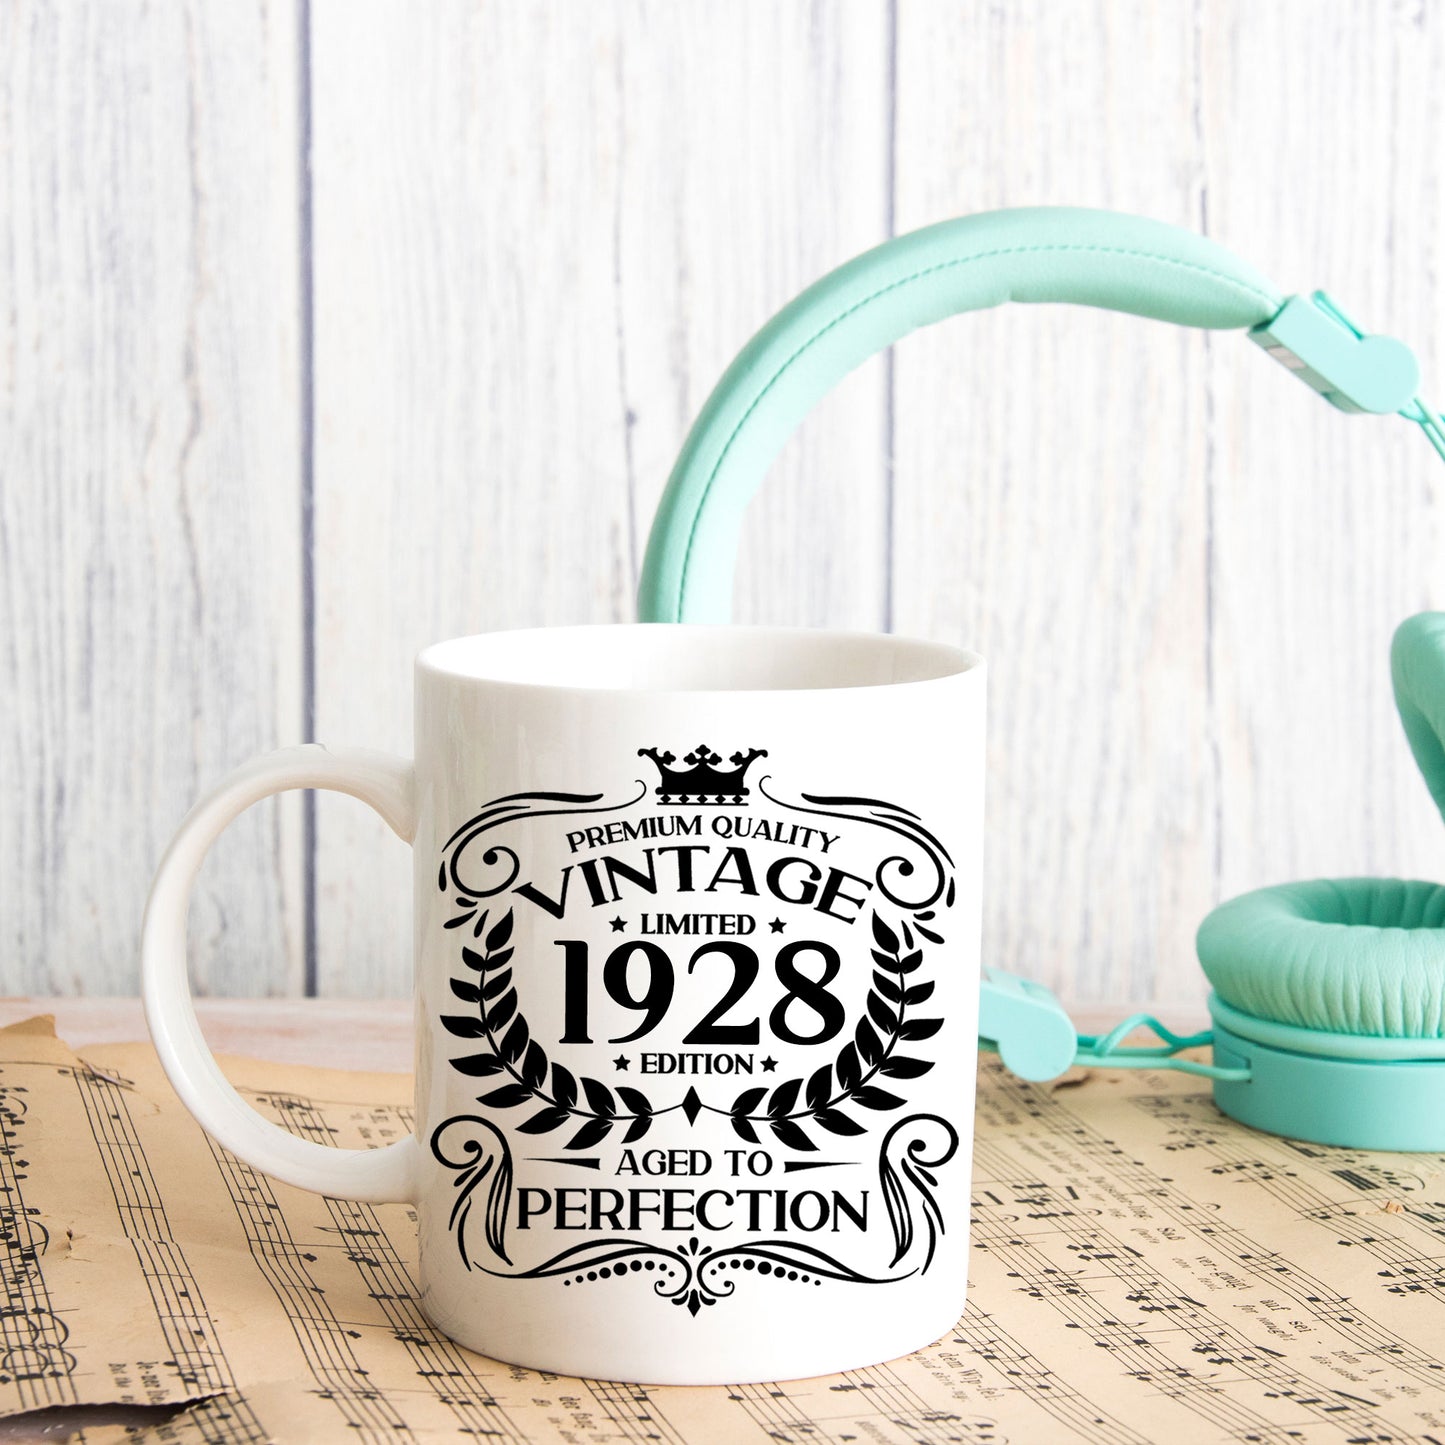 Personalised Vintage 1928 Mug and/or Coaster  - Always Looking Good -   